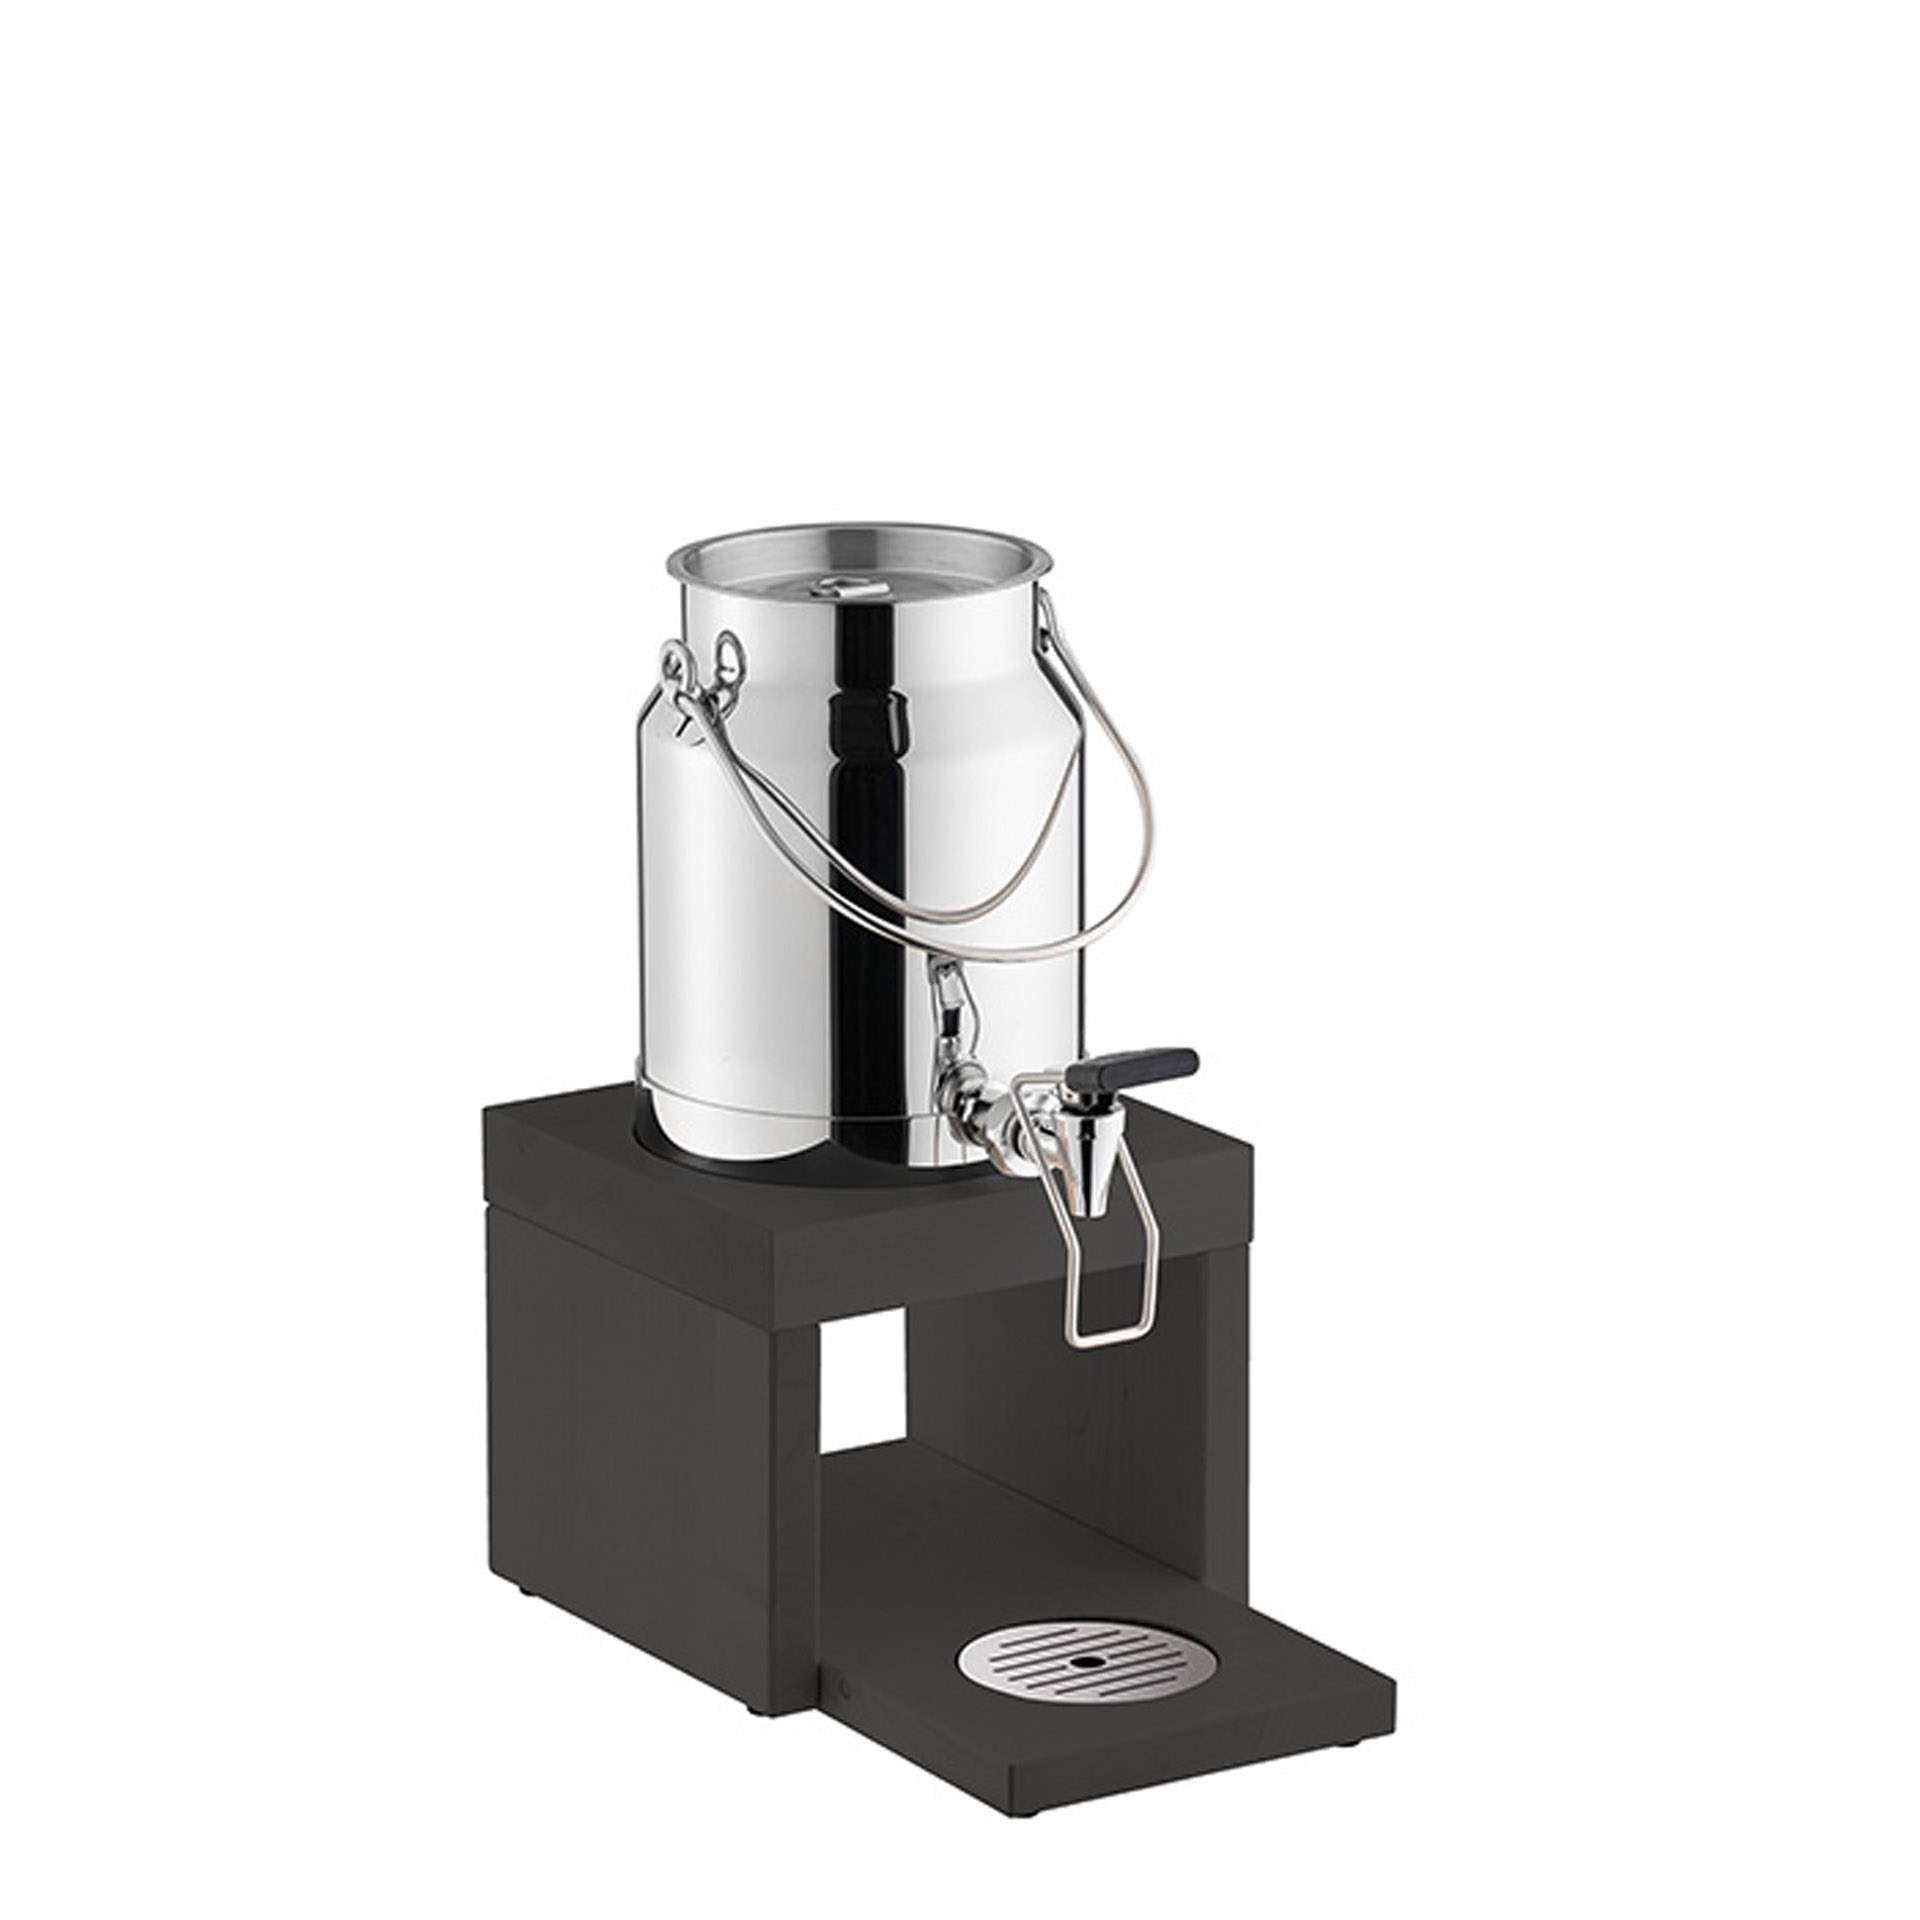 Milchdispenser - mit Touchless Adapter - Serie Bridge - Buche - Abm. 31,0 x 20,0 x 39,0 cm - Inhalt 3,0 l - Edelstahl - 10837-B